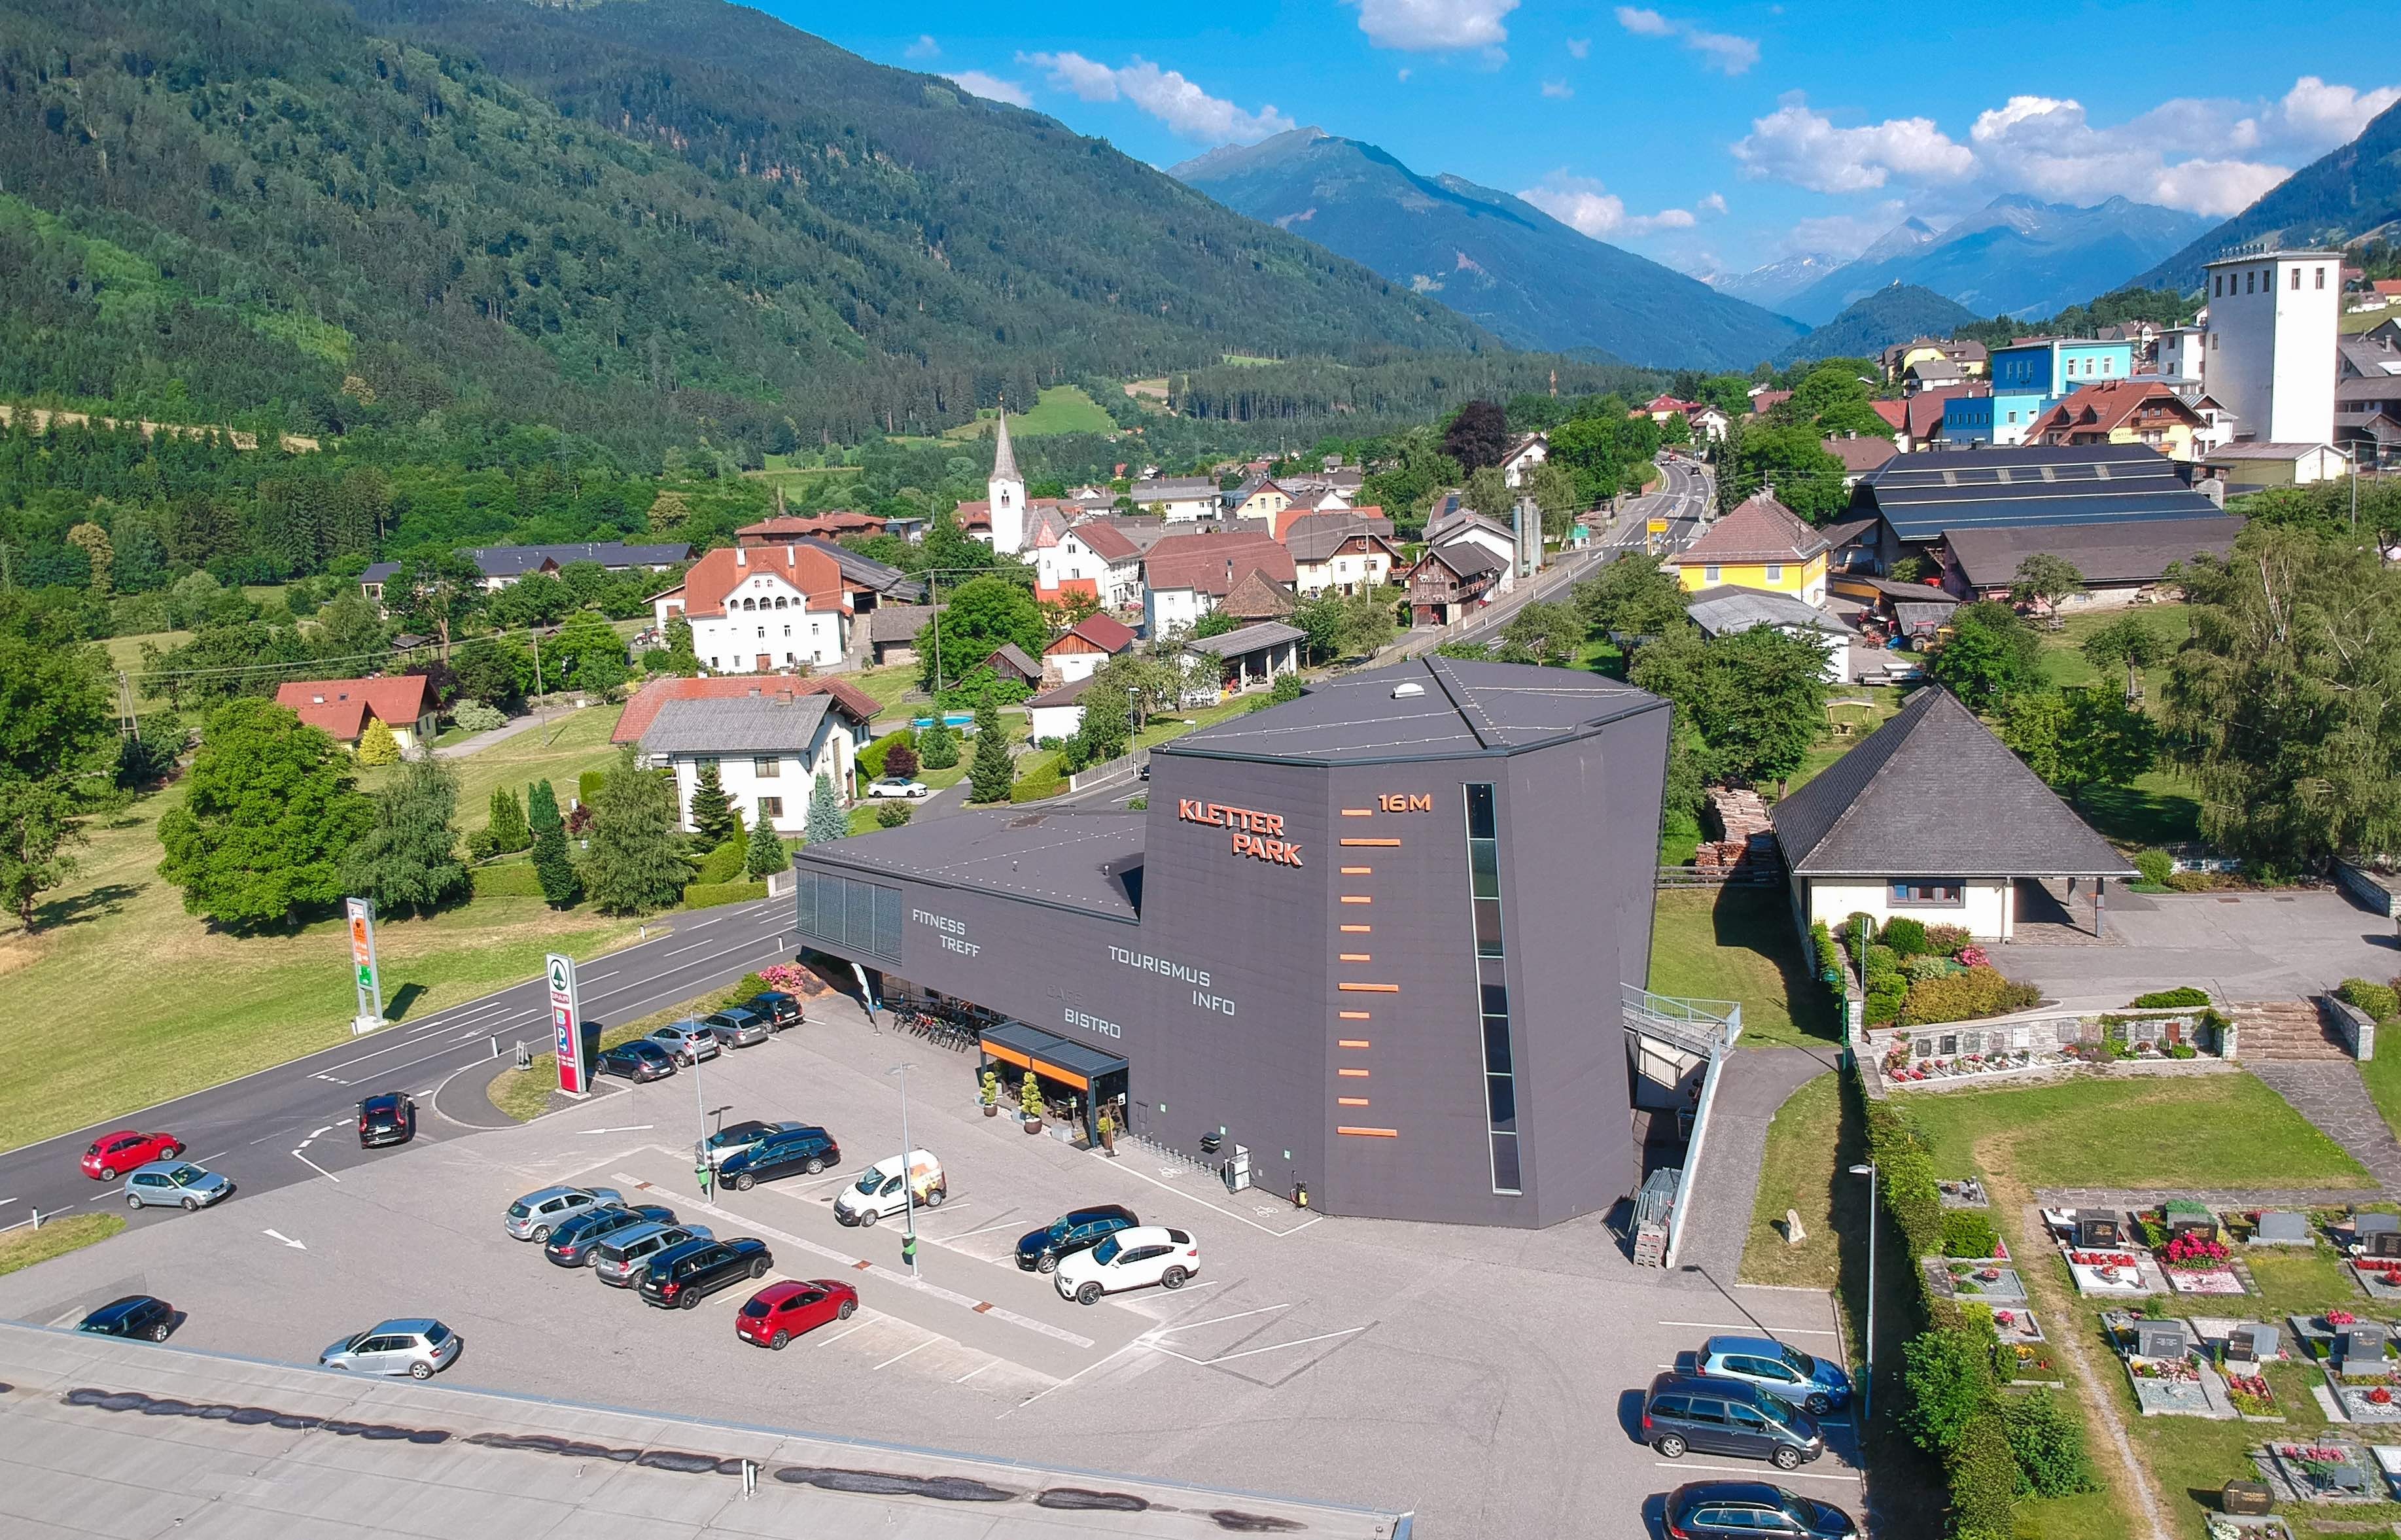 Kletterhalle Mühldorf